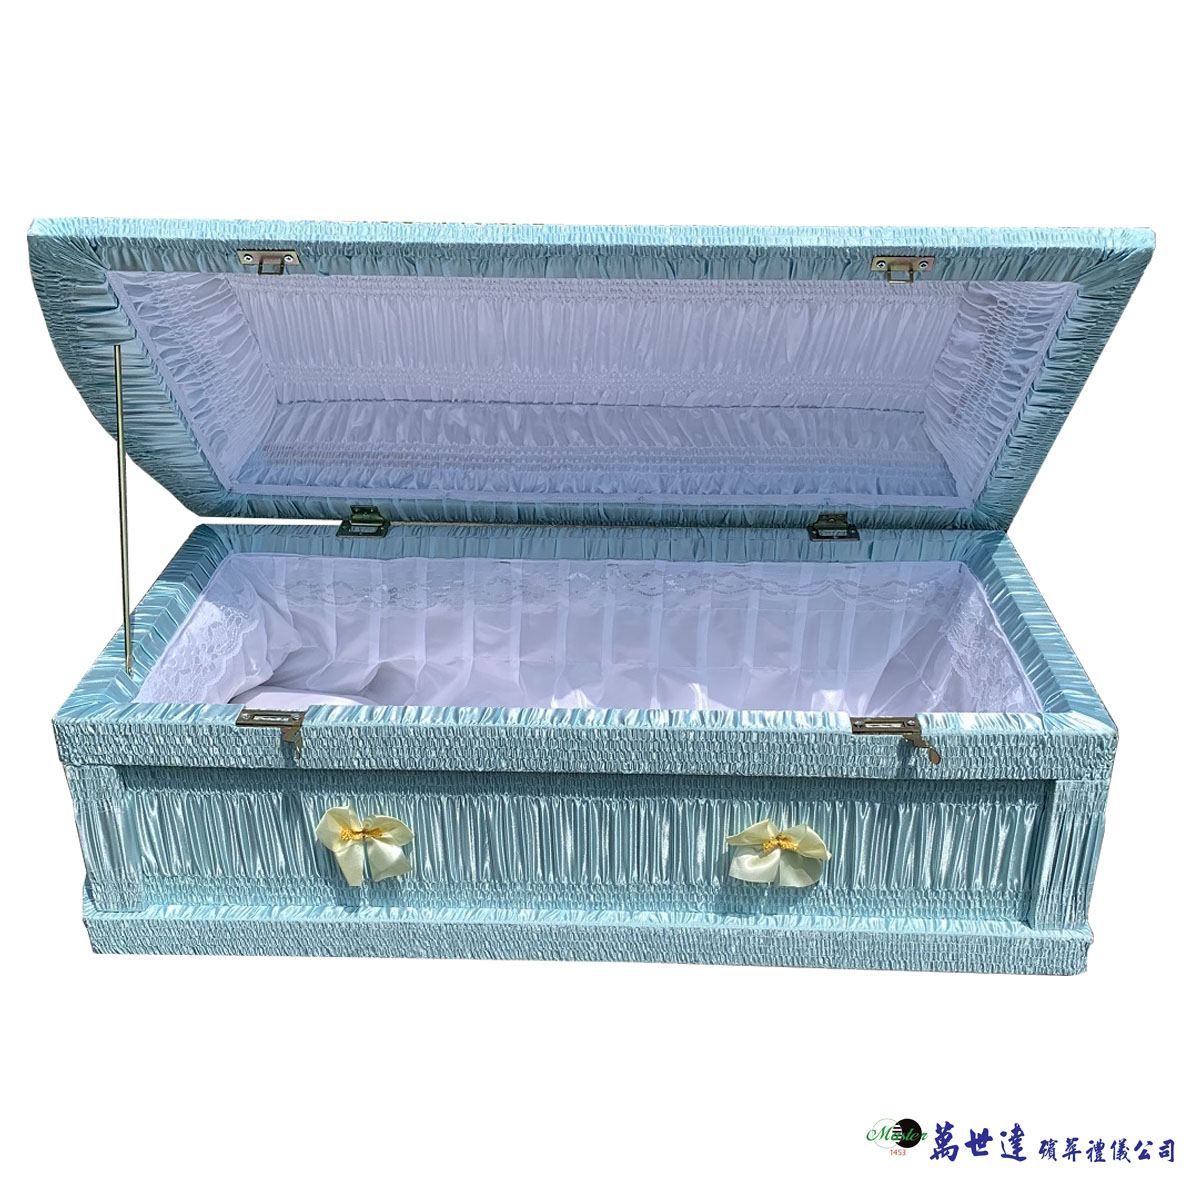 藍色天使棺(60公分)